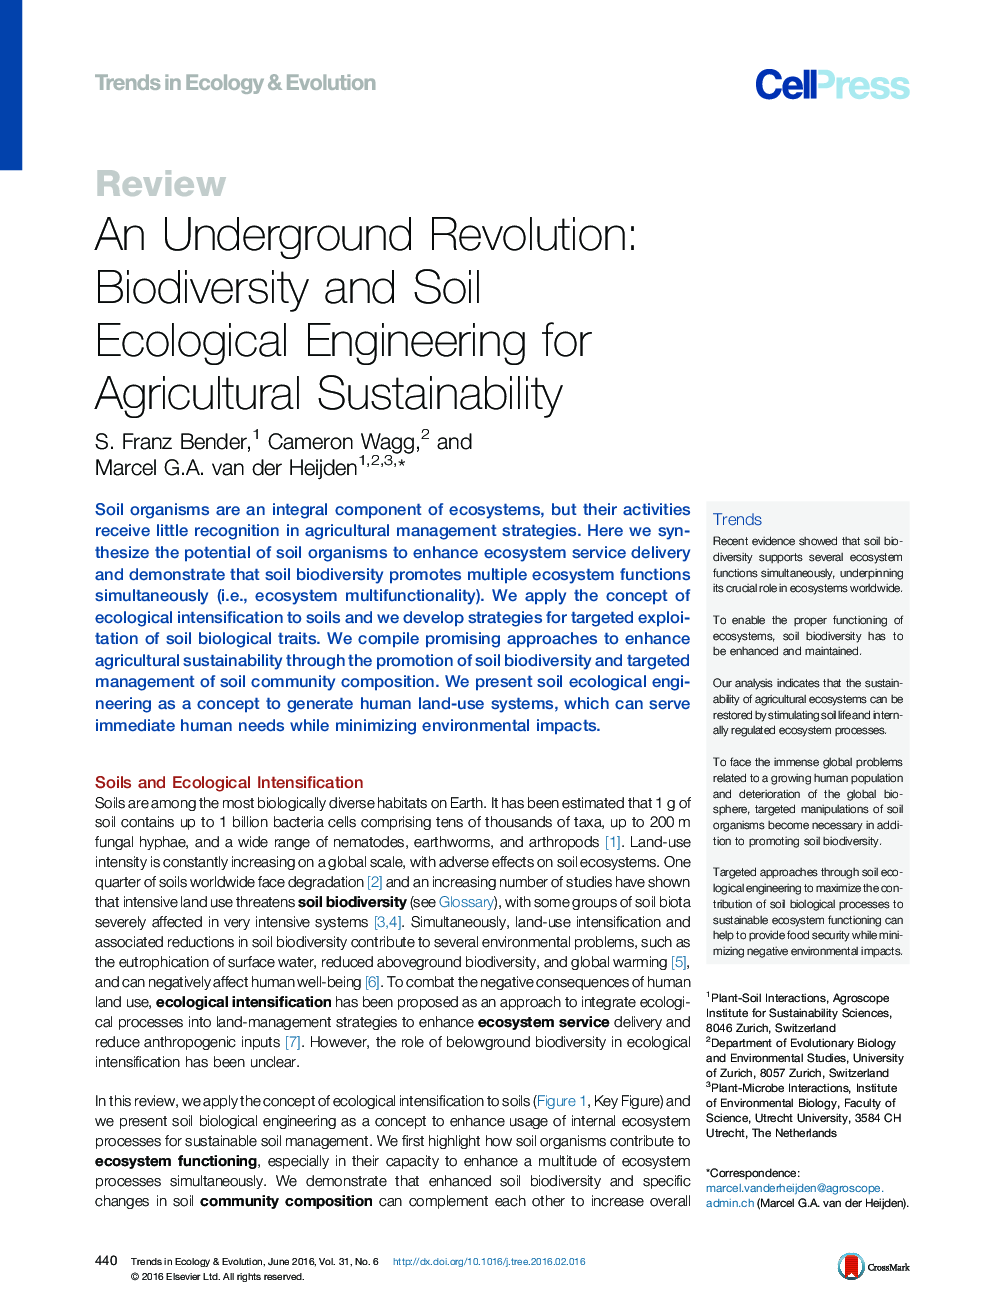 یک انقلاب زیرزمینی: تنوع زیستی و مهندسی اکولوژیک خاک برای توسعه پایدار کشاورزی